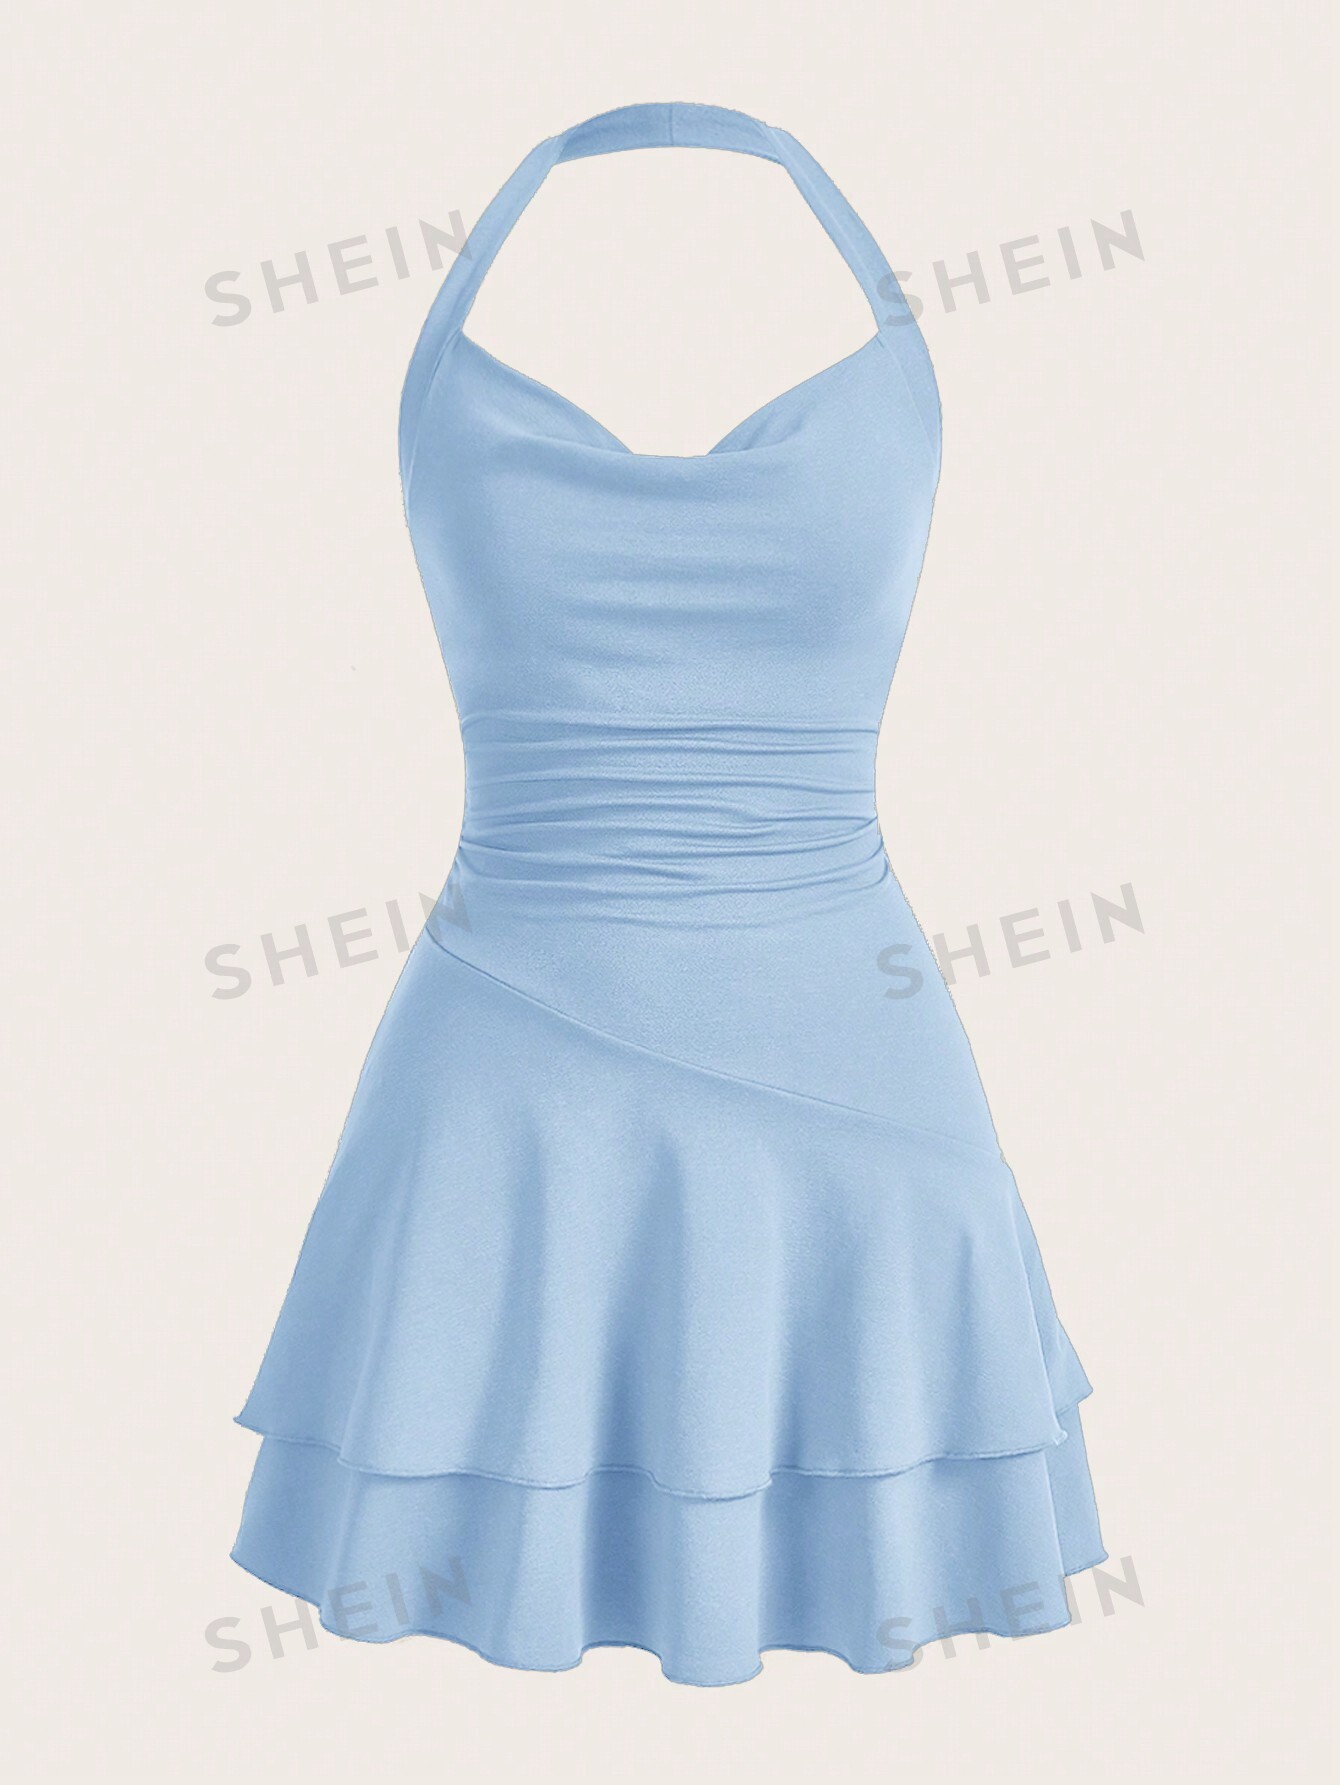 SHEIN MOD однотонное женское платье с бретелькой на шее и многослойным подолом, голубые платье bershka облегающее 42 размер